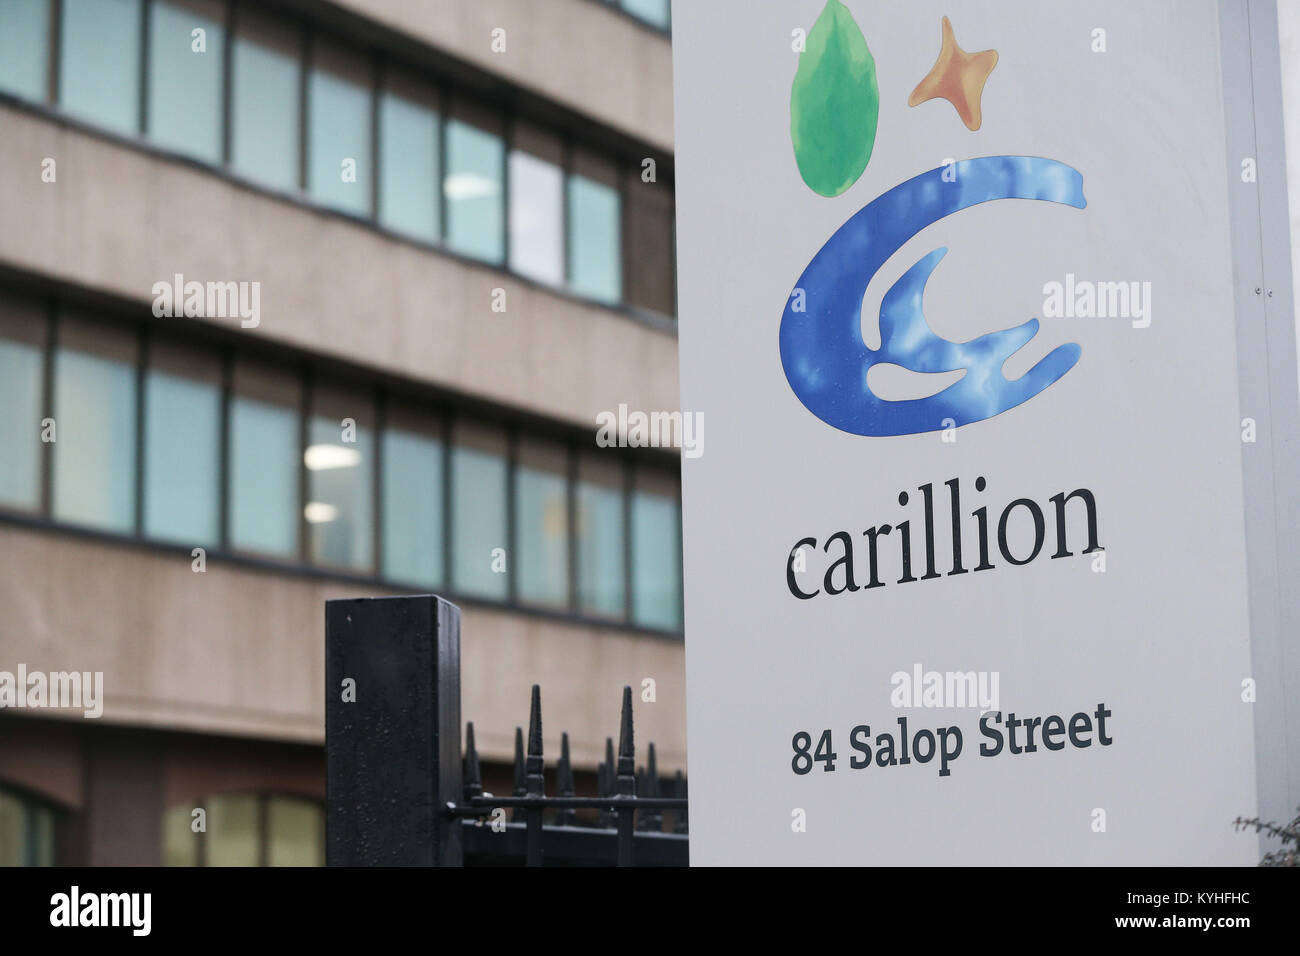 Une vue générale des bureaux de Carillion plc à Wolverhampton, comme le gouvernement l'a dit, tout le personnel de Carillion devrait encore venir travailler et "ceux qui reçoivent déjà leurs pensions continueront à recevoir des paiements", suite à l'effondrement du géant de la construction. Banque D'Images